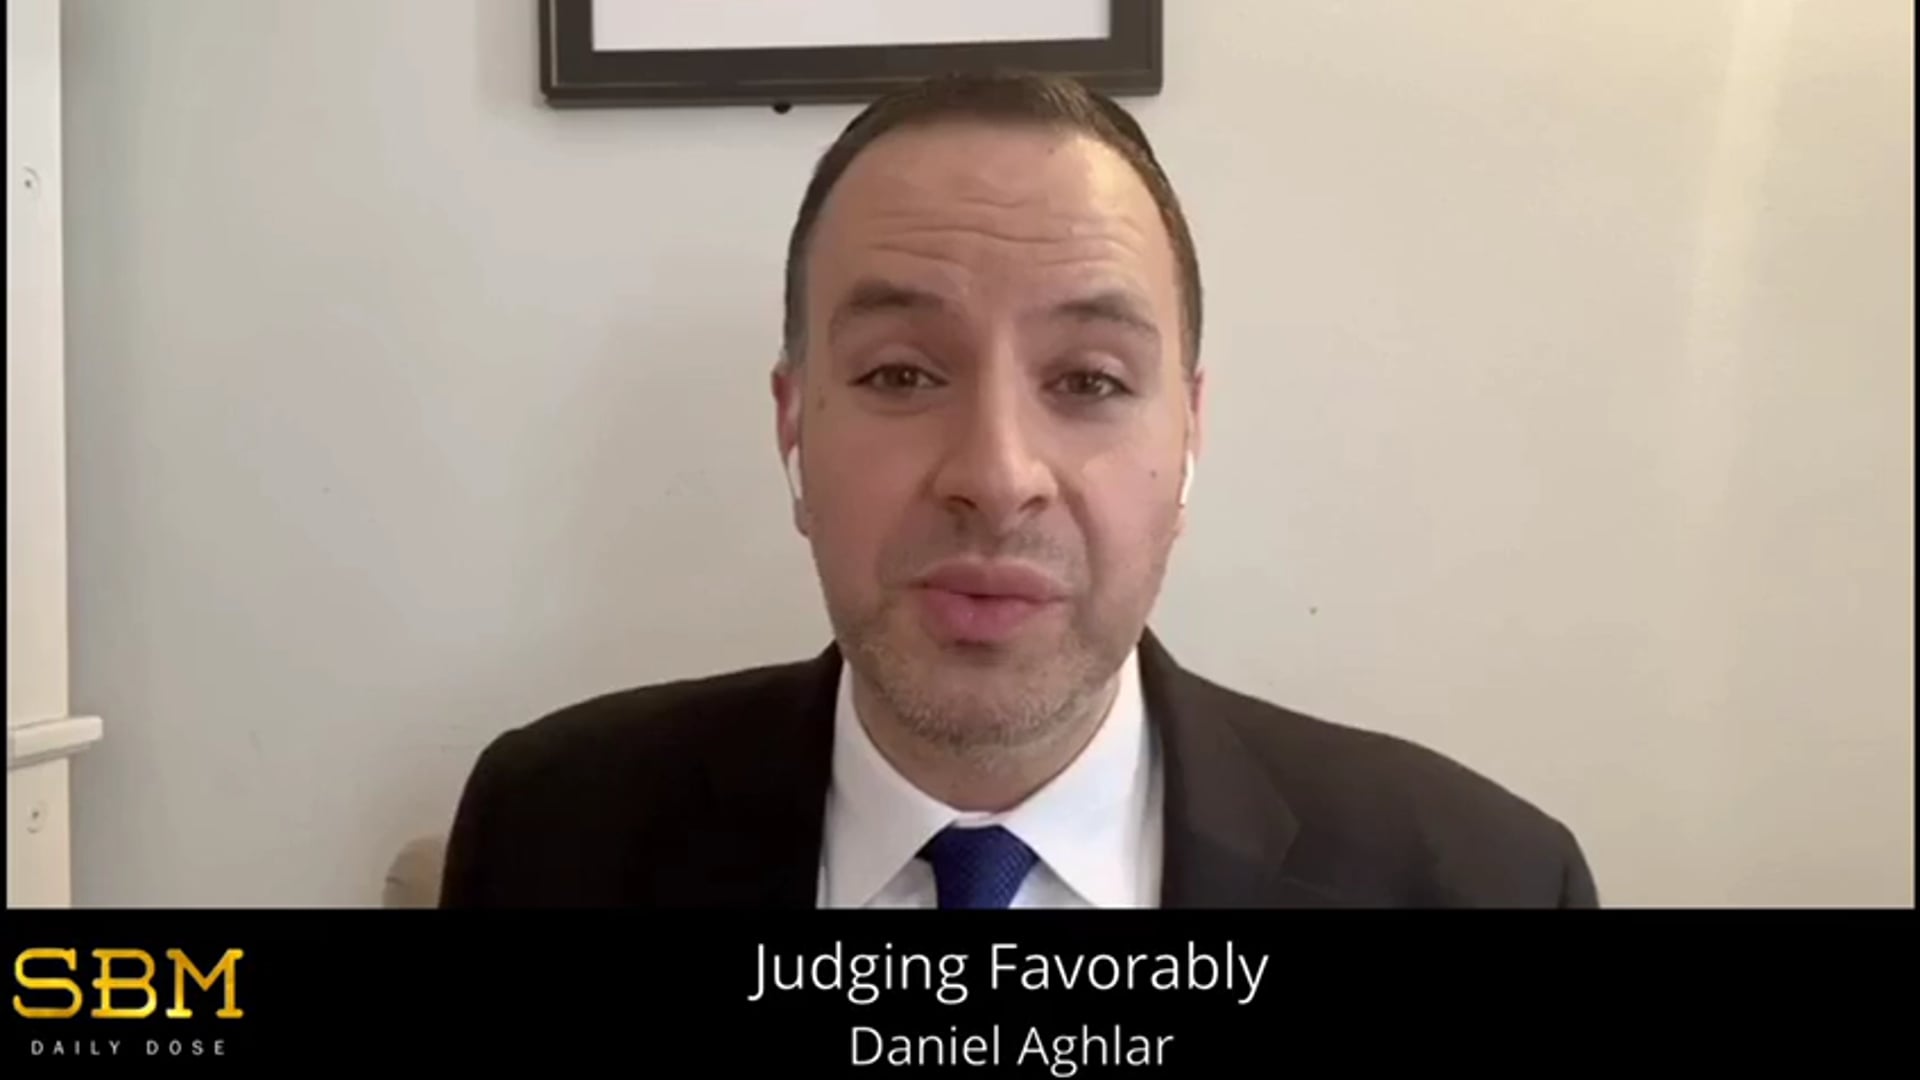 Judging Favorably - Daniel Aghlar